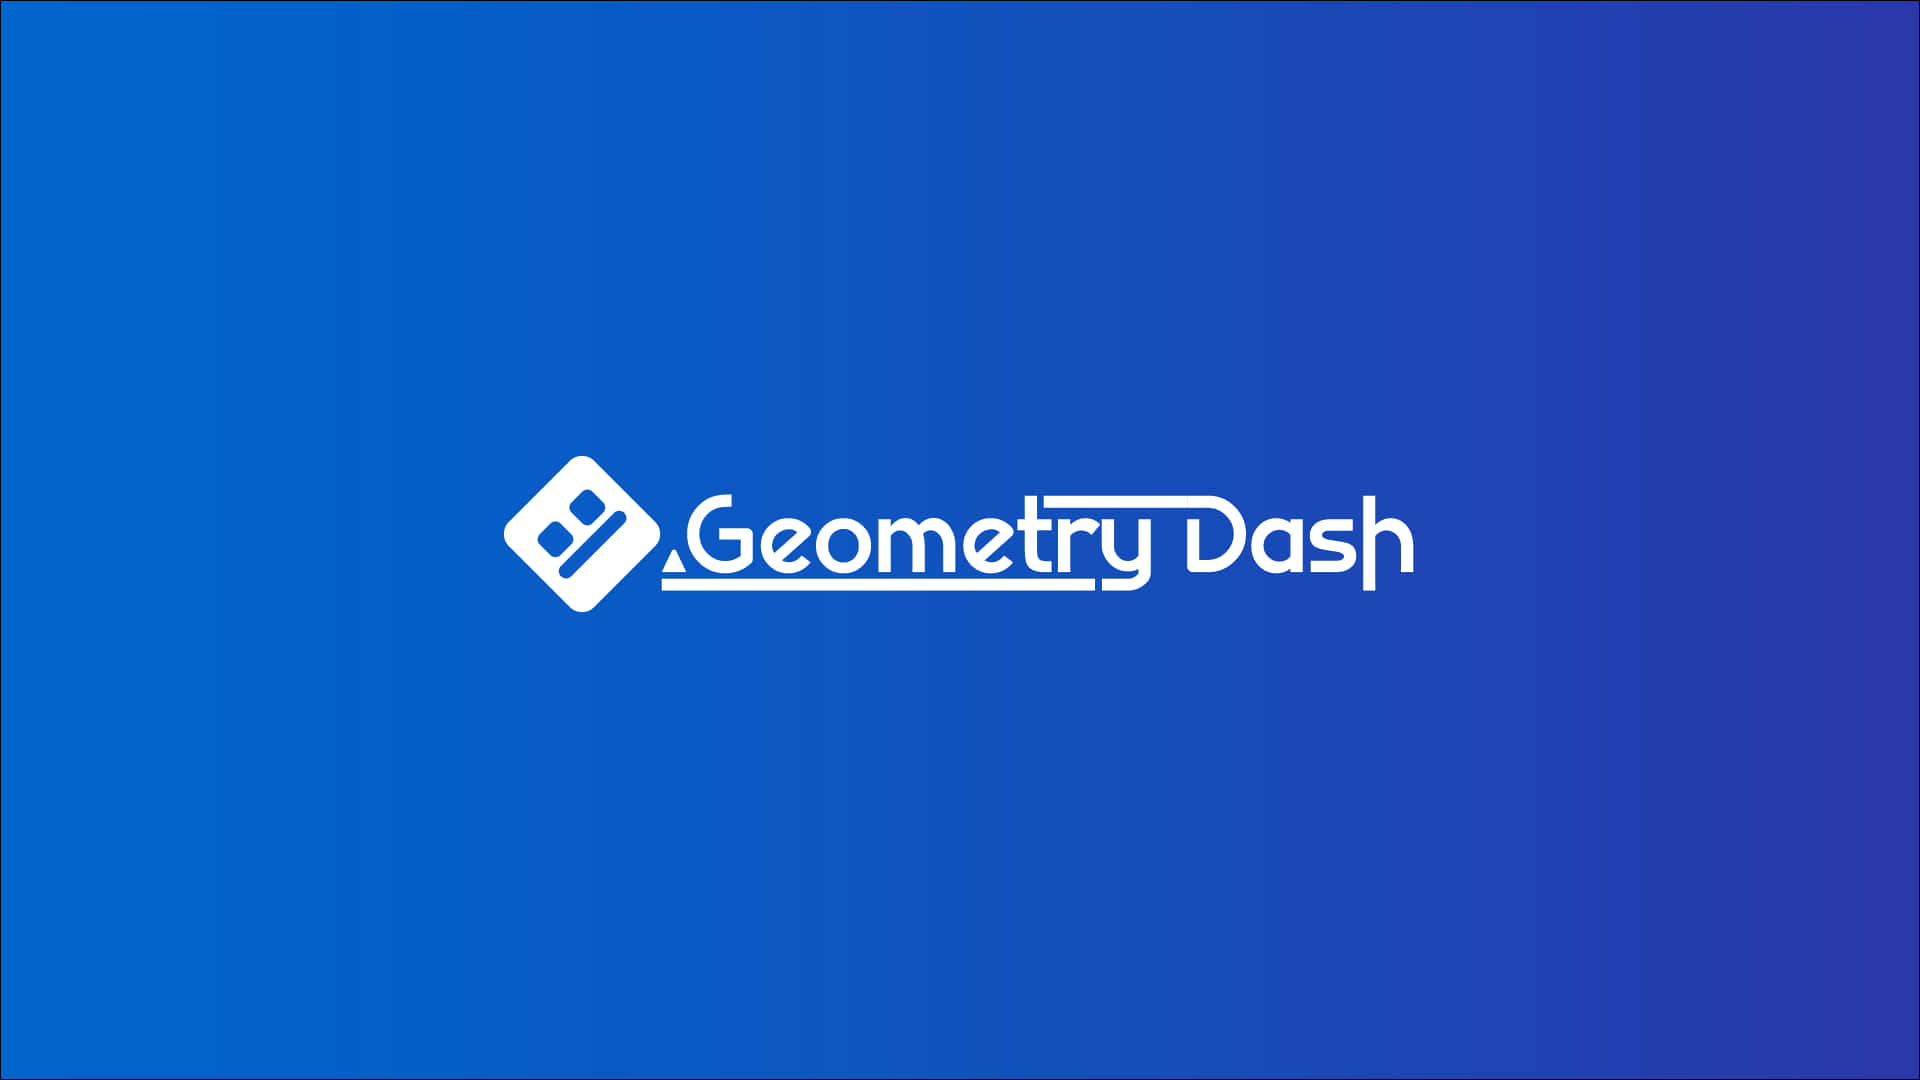 Weißesgeometry Dash Logo Auf Blau Wallpaper